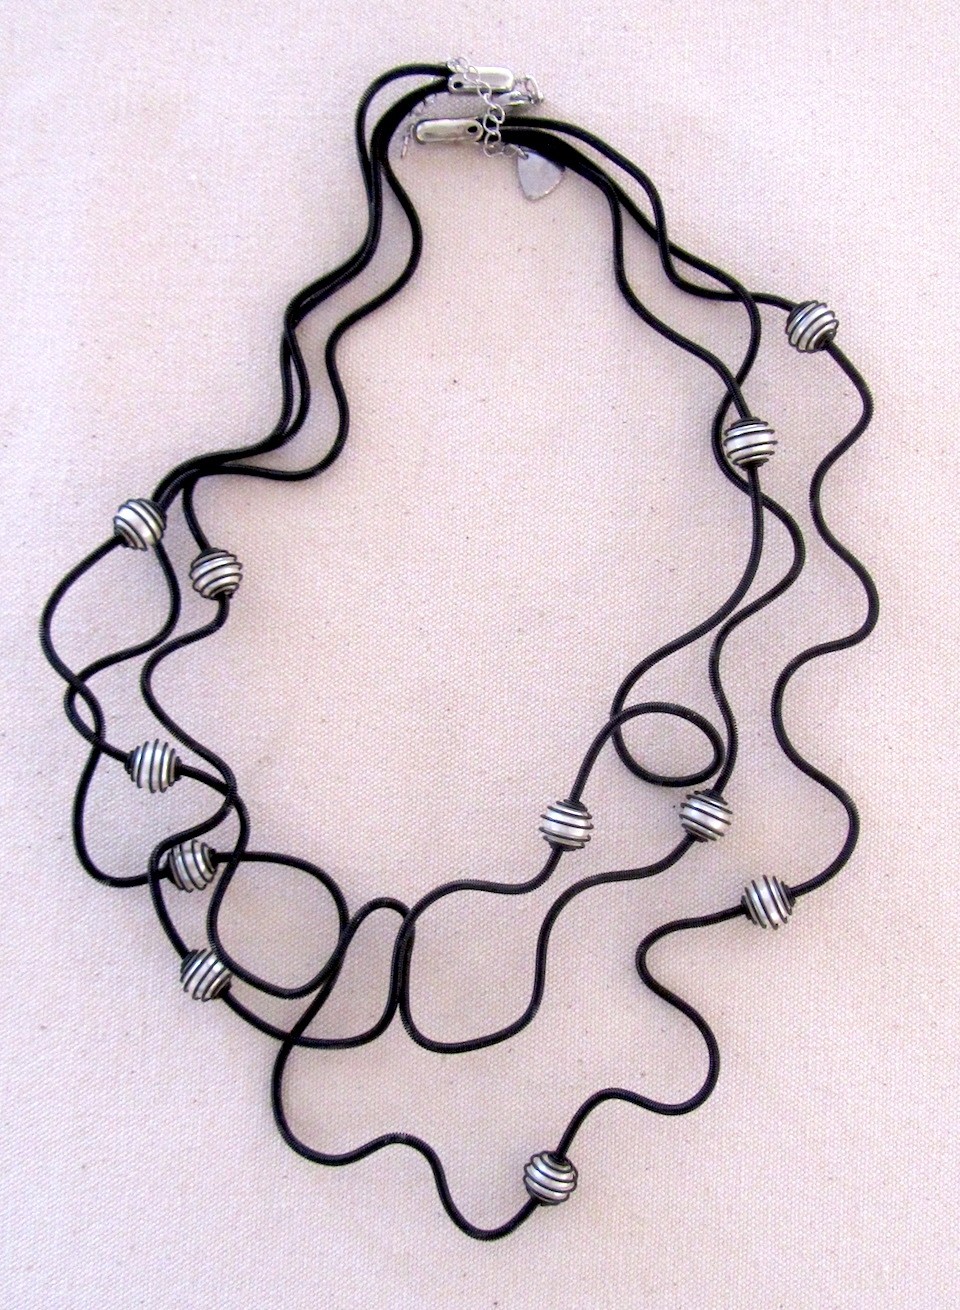 Collier PERLES EN CAGE blanches, no 99, de l'artiste Sandrine Giraud, Ce bijou modulable, toujours original, marie avec élégance la grâce des perles avec l’originalité des lignes résolument contemporaines.